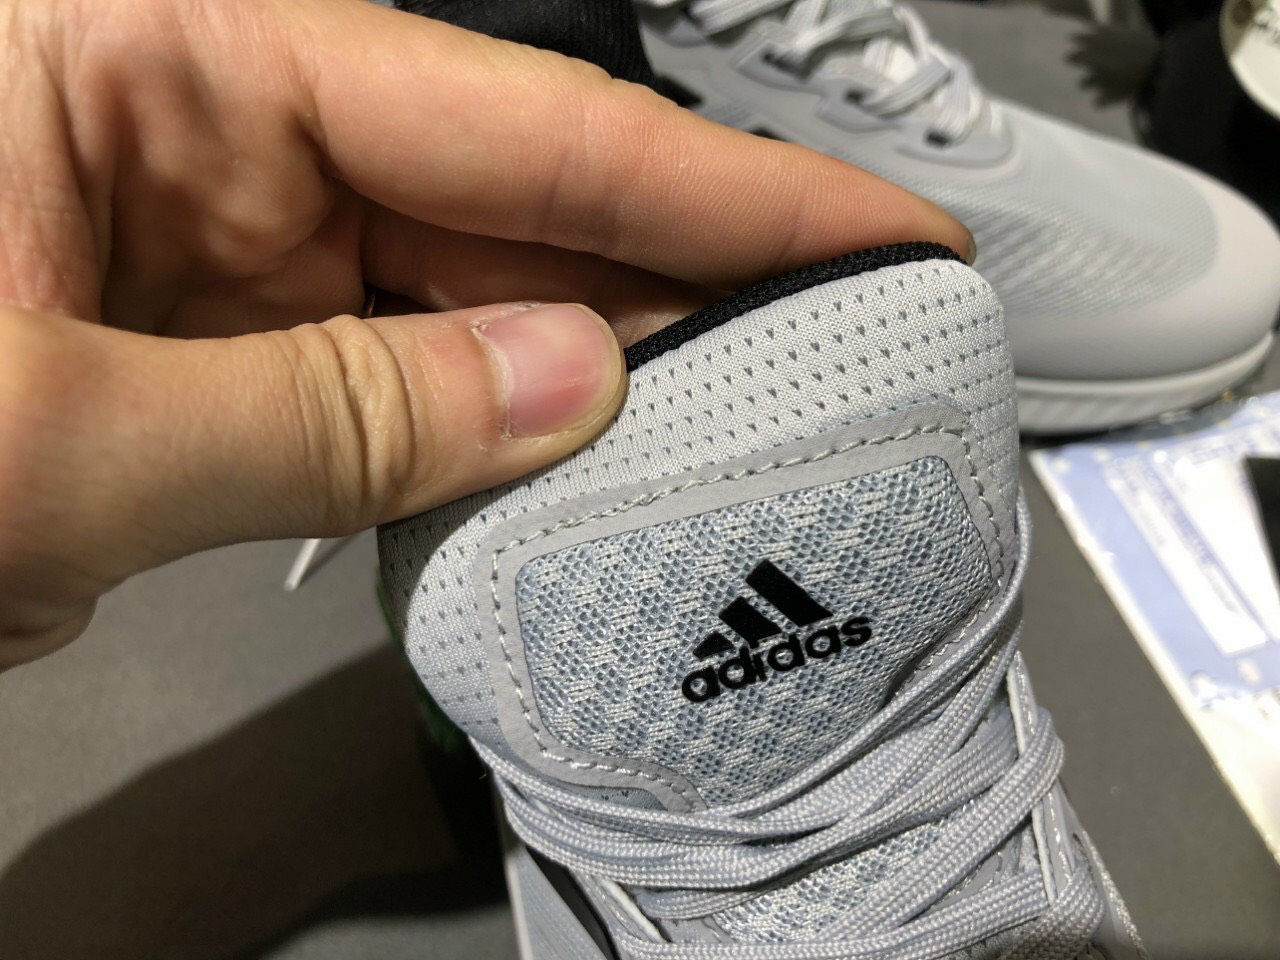 Giày Adidas Alphabounce 2022 Xám Chuột Rep 1:1